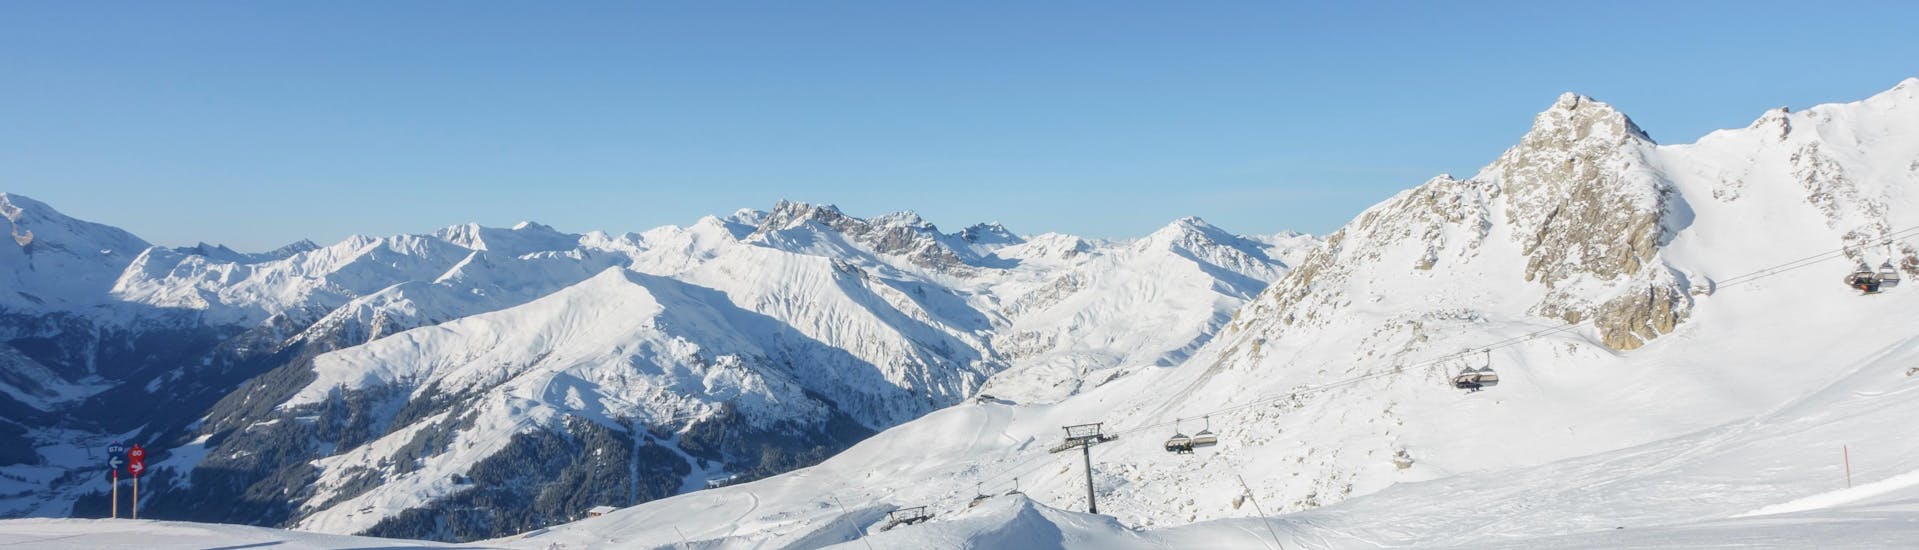 Ausblick auf die sonnige Berglandschaft beim Skifahren lernen mit den Skischulen in Finkenberg.